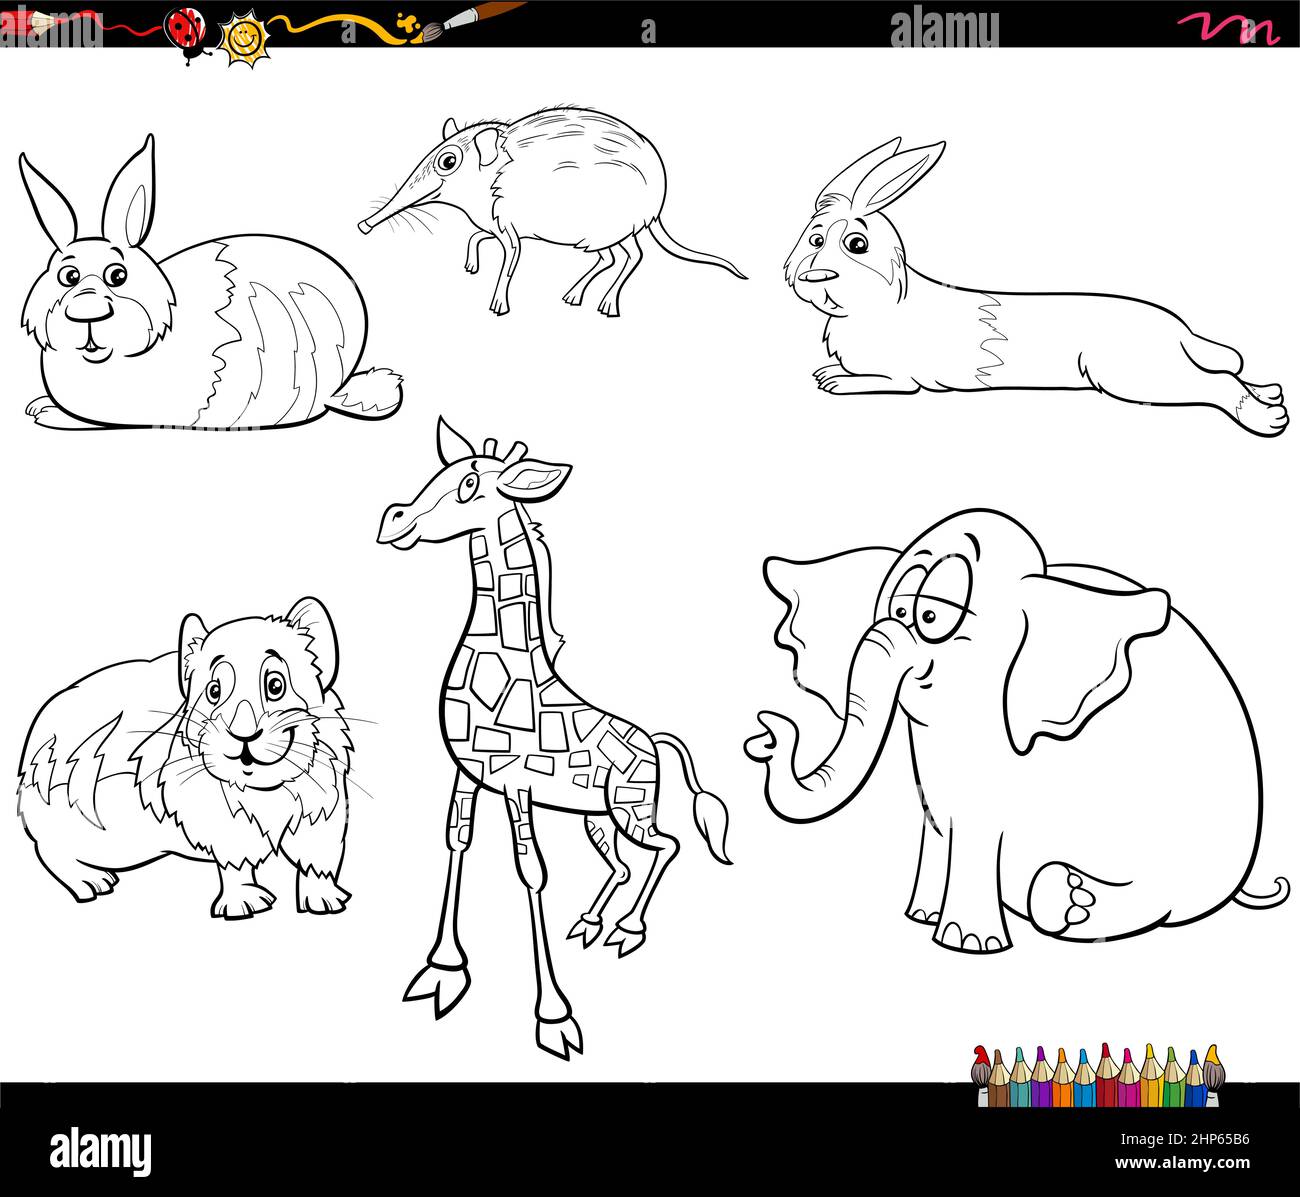 Mammals animals cartoon coloring book hi